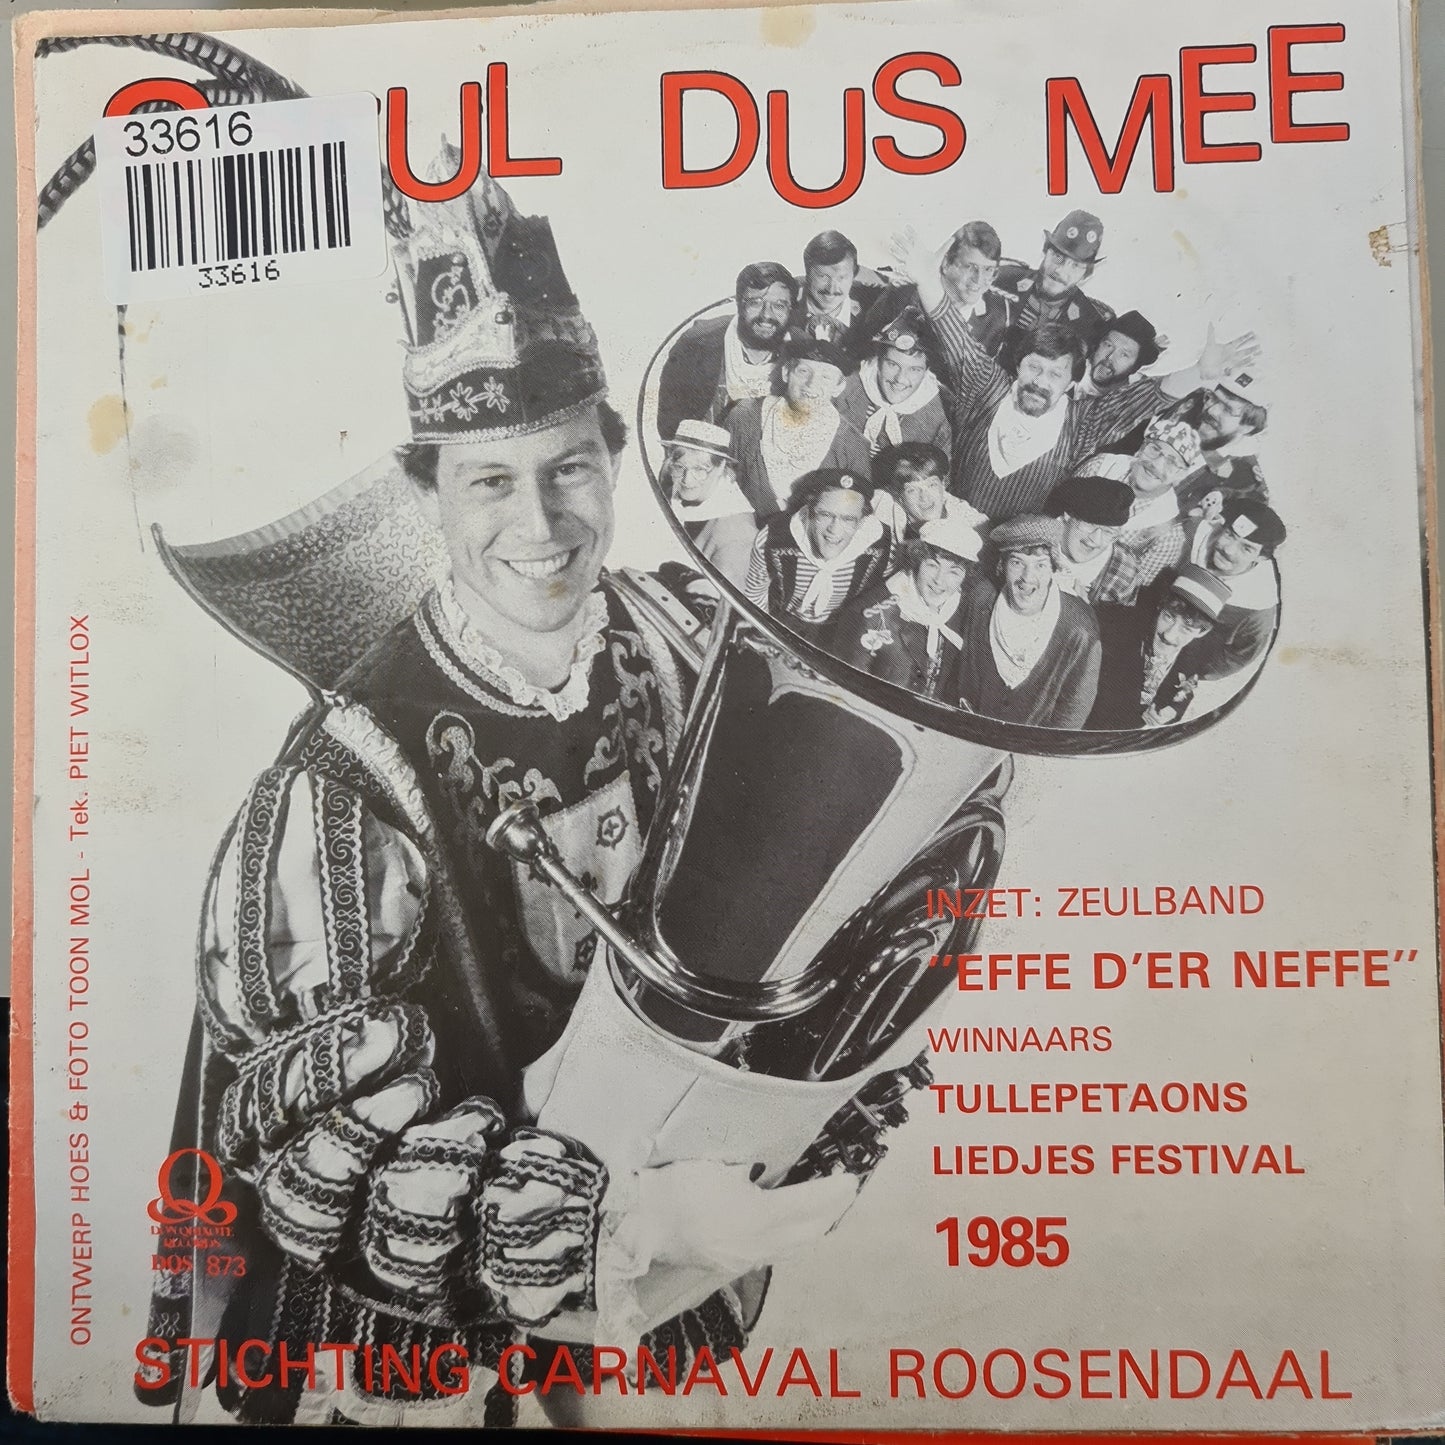 Stichting Carnaval Roosendaal - Speel Dus Mee 33616 Vinyl Singles VINYLSINGLES.NL